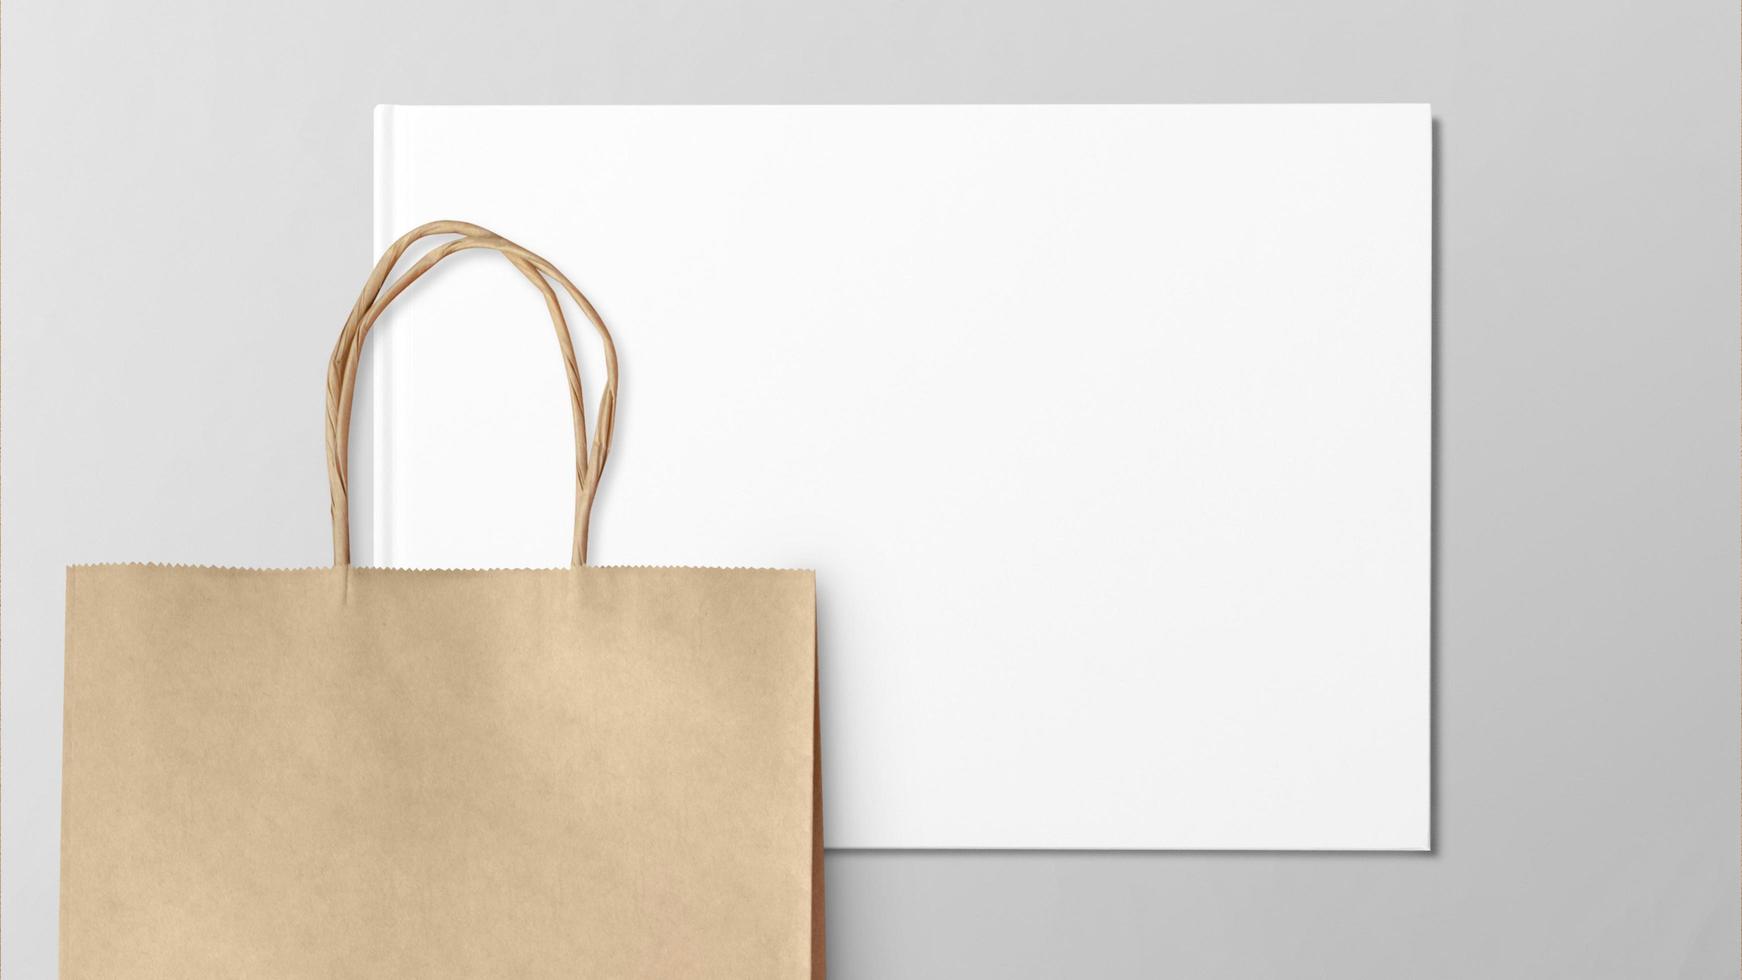 sac de transport en papier brun vierge avec poignées pour faire du shopping photo